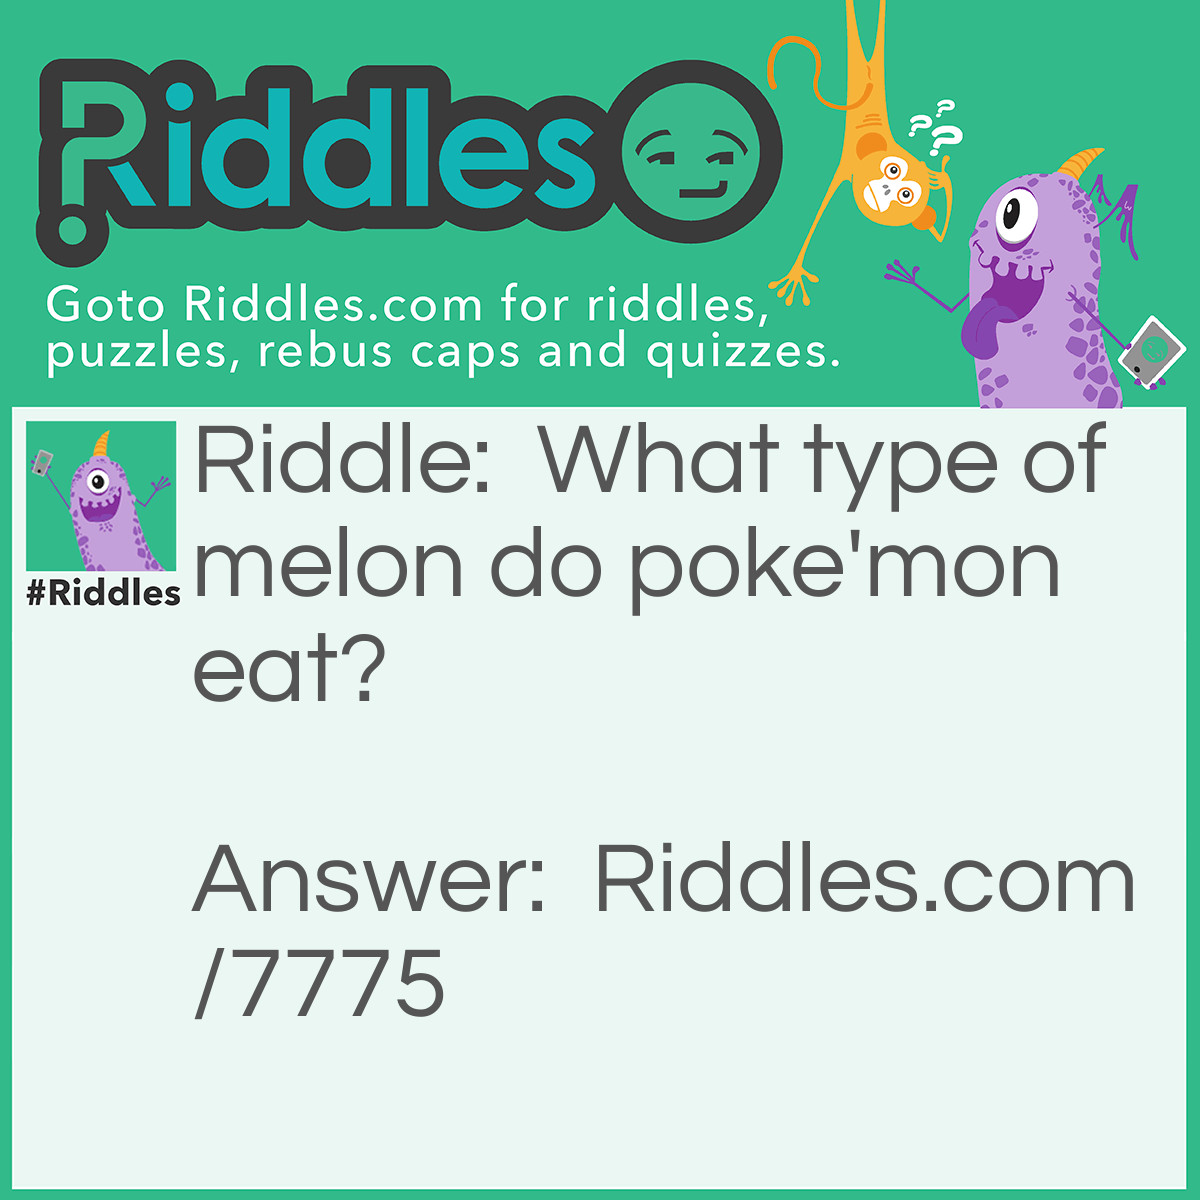 Riddle: What type of melon do poke'mon eat? Answer: char- melon!